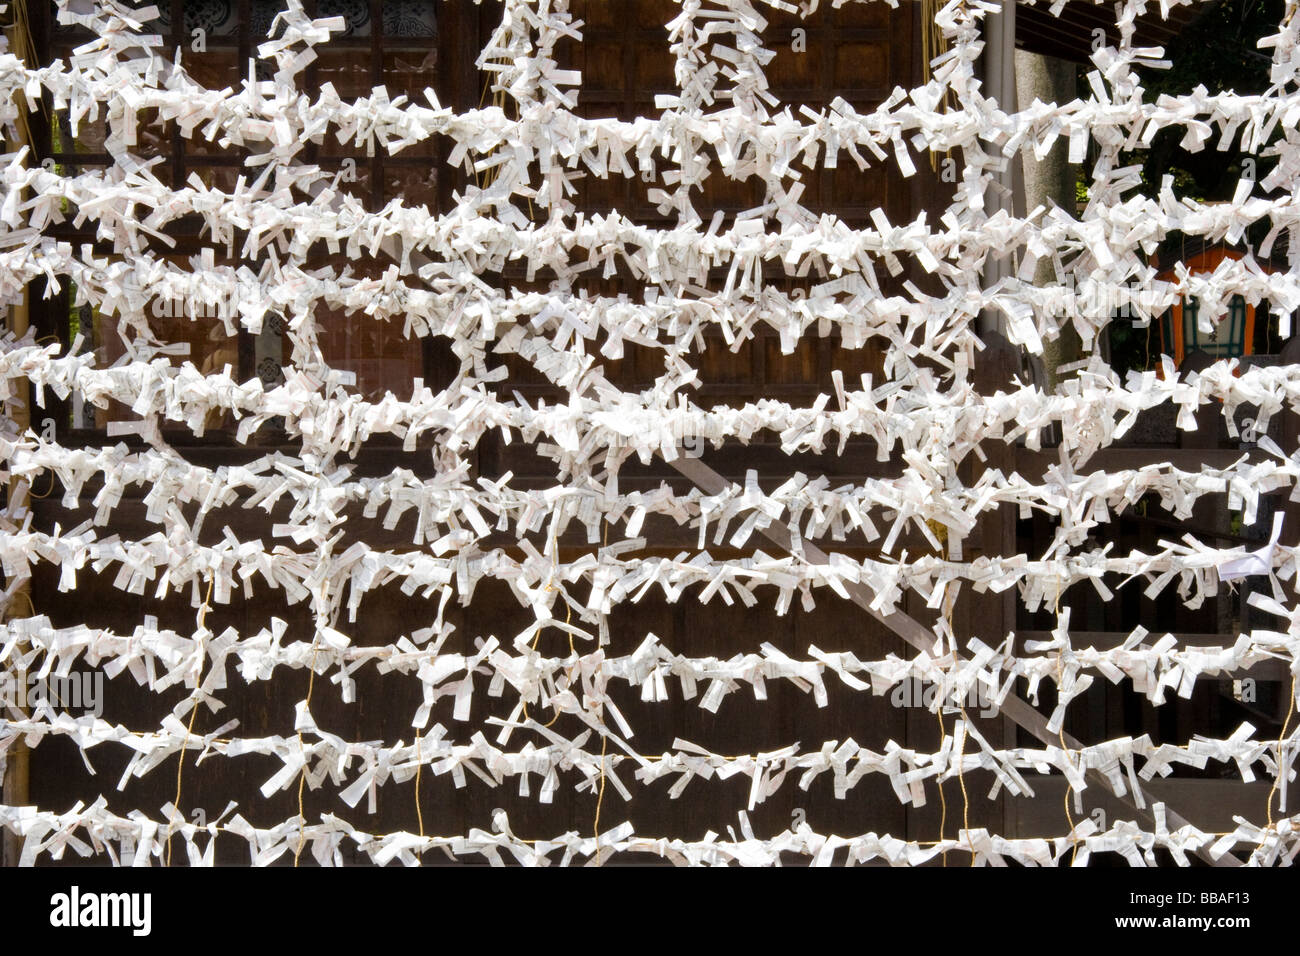 Gros plan de milliers de malchance O-mikuji, omikuji, livre blanc la fortune glisse lié à des stings parallèles formant un modèle au sanctuaire de Yasaka à Kyoto. Banque D'Images